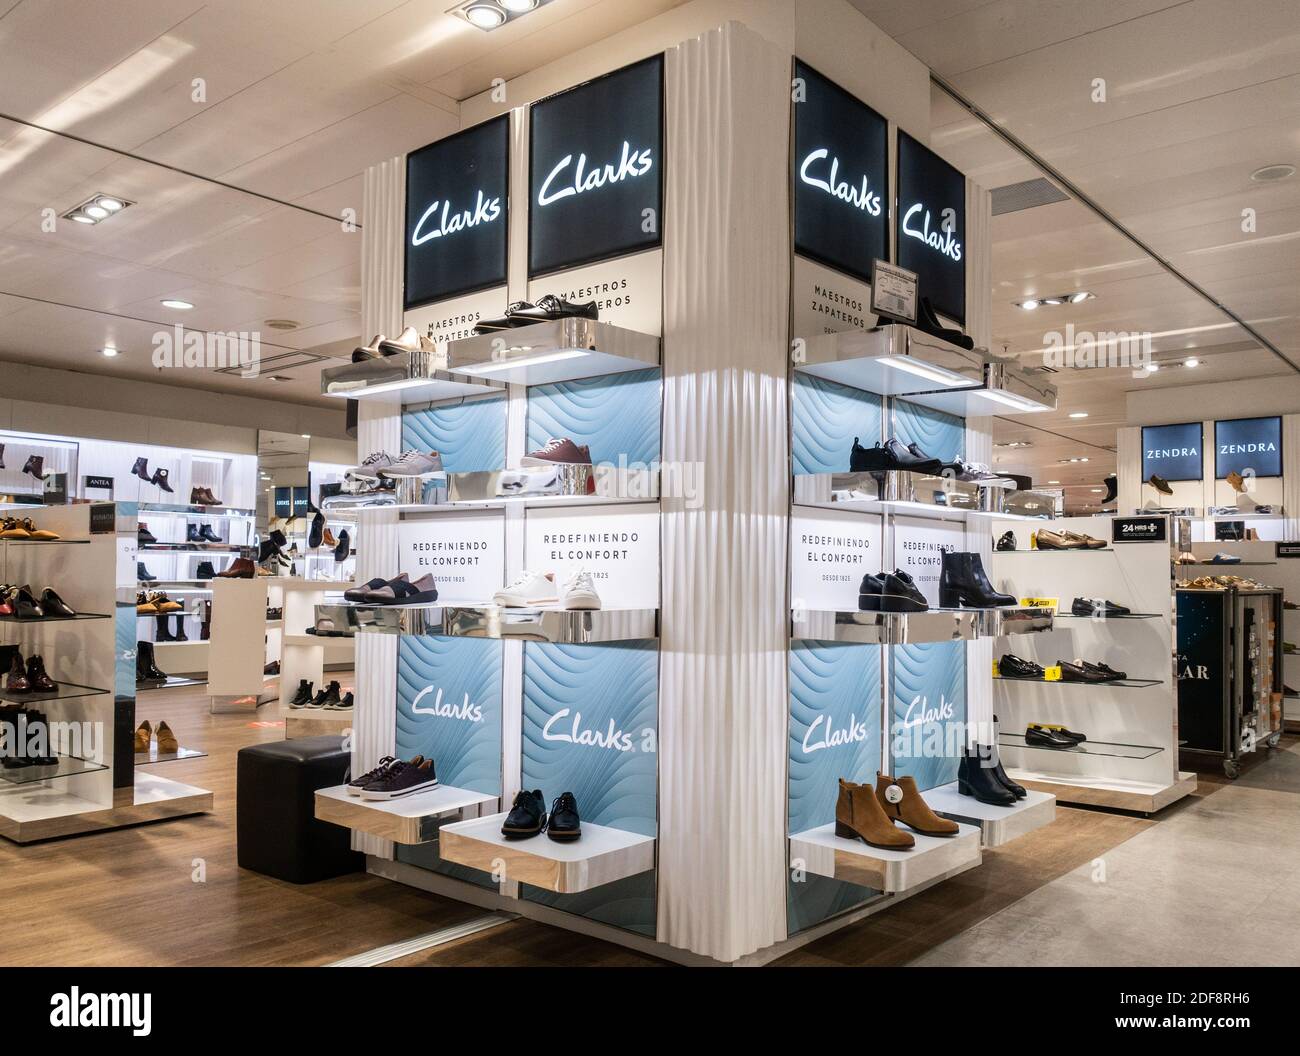 Zapatos Clarks la tienda de Corte Inglés en España Fotografía stock - Alamy